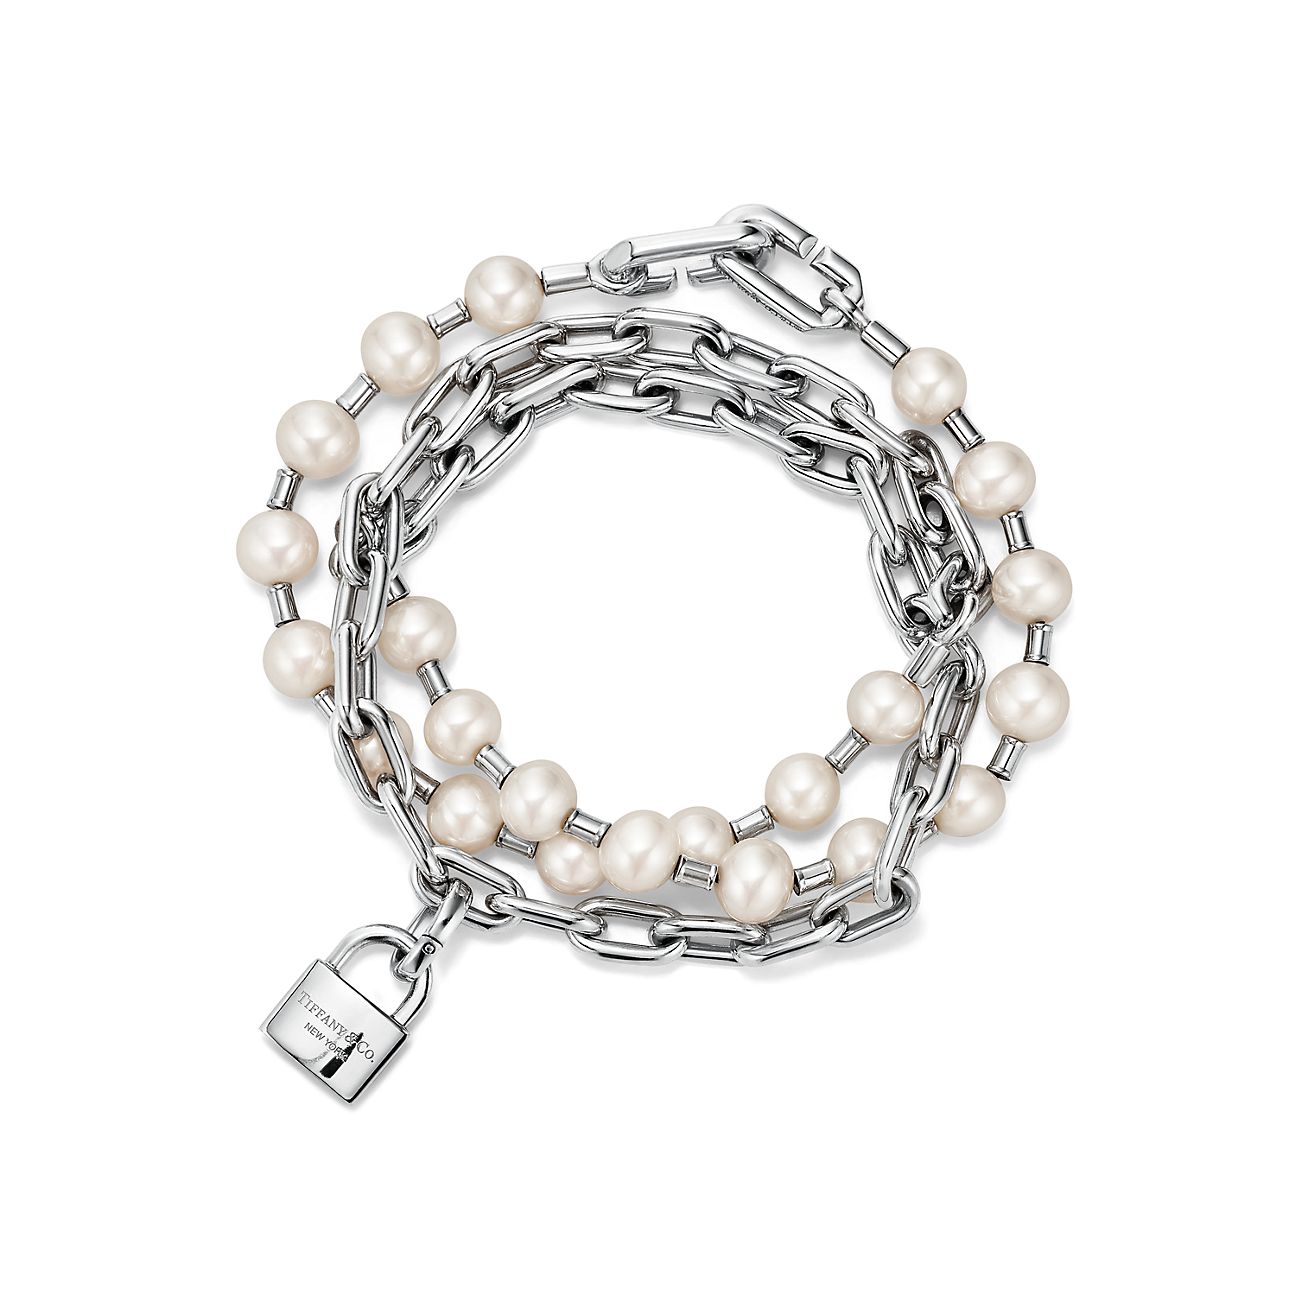 Tiffany HardWare Pearl Bracelet in Silver 5-6mm | Pearl bracelet, Pearls,  Silver